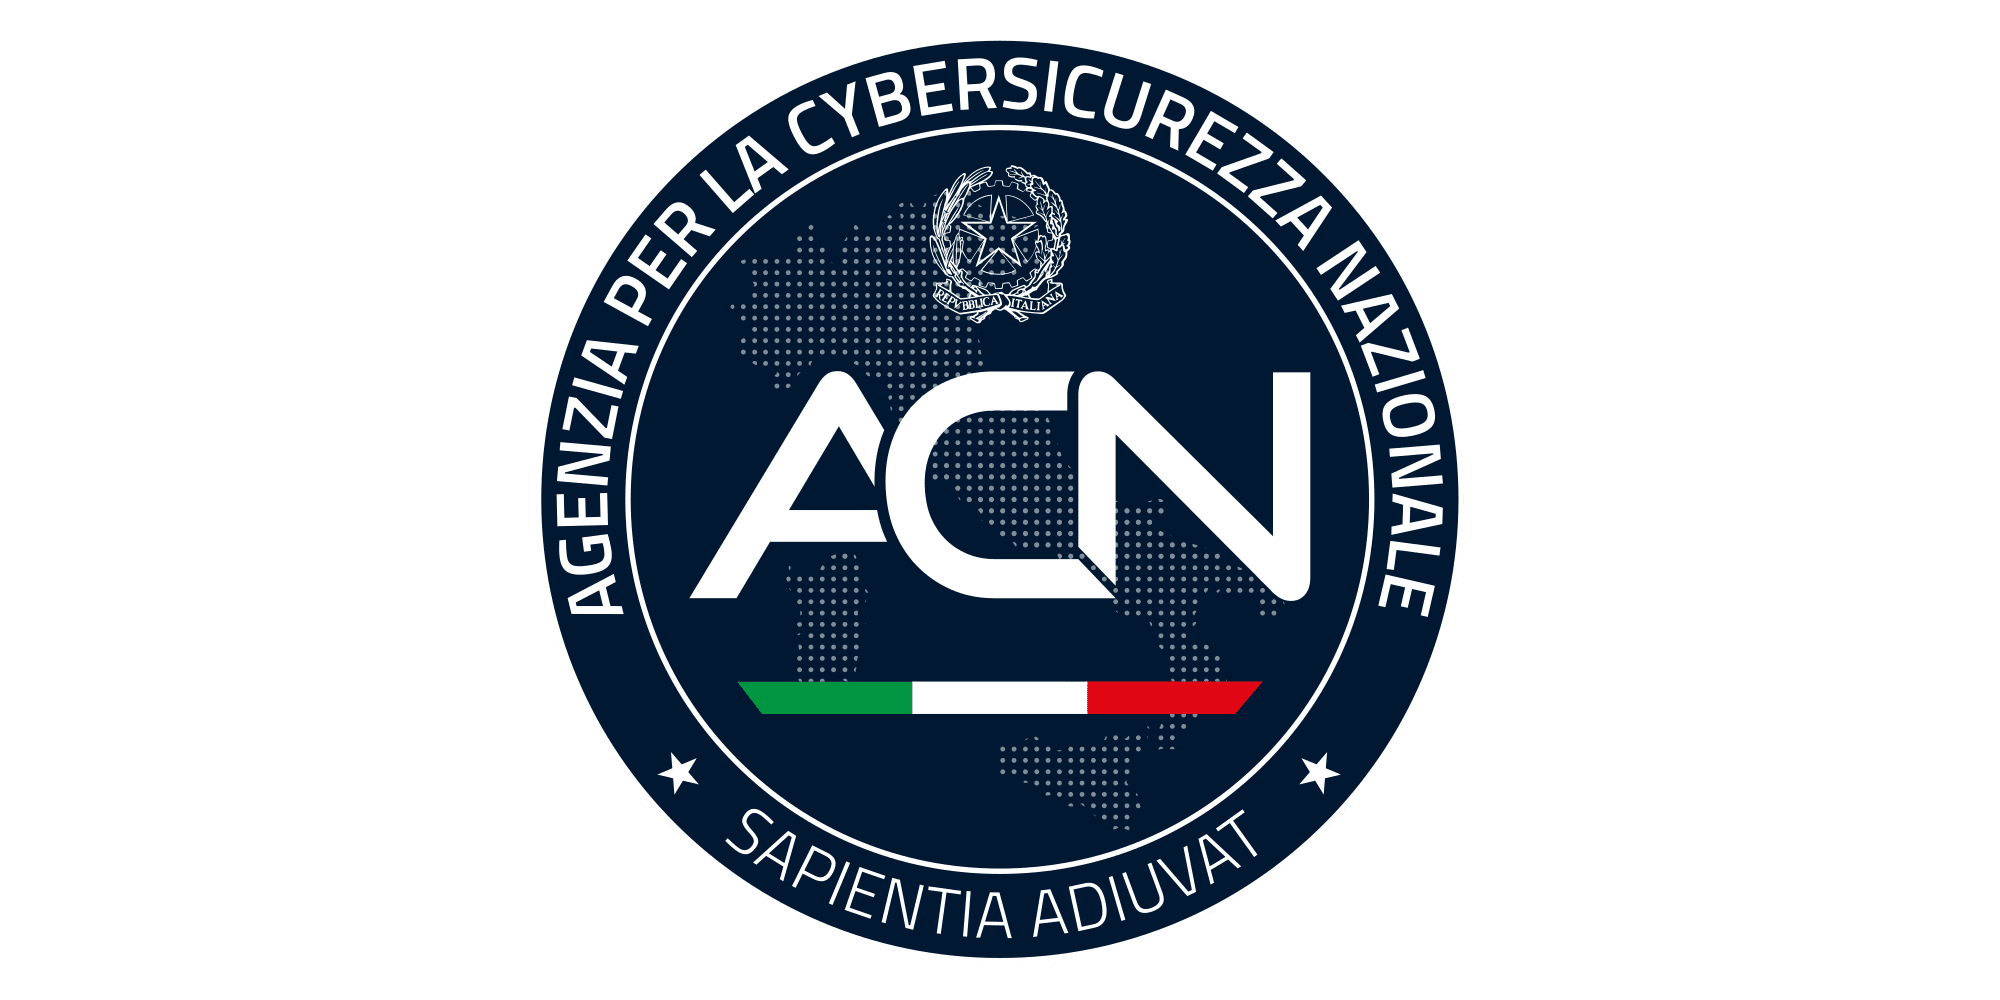 ACN logo